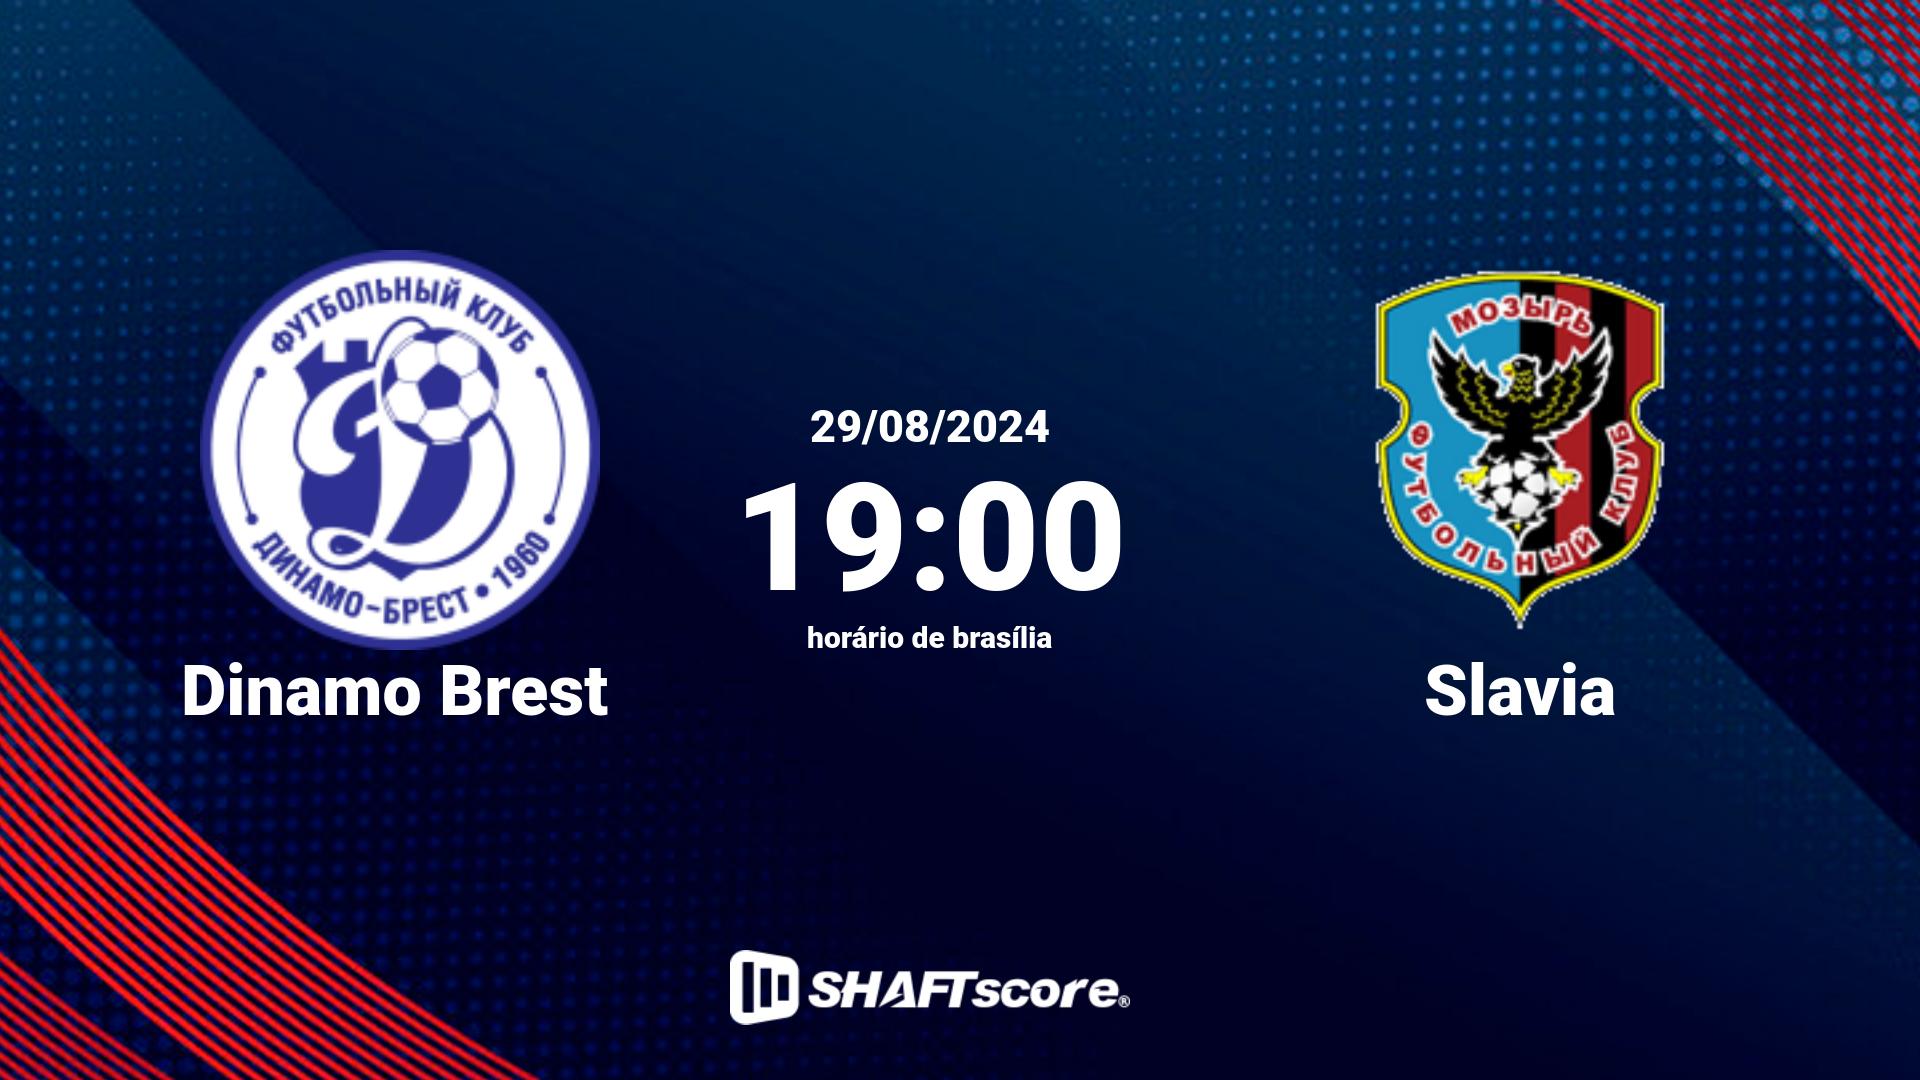 Estatísticas do jogo Dinamo Brest vs Slavia 29.08 19:00